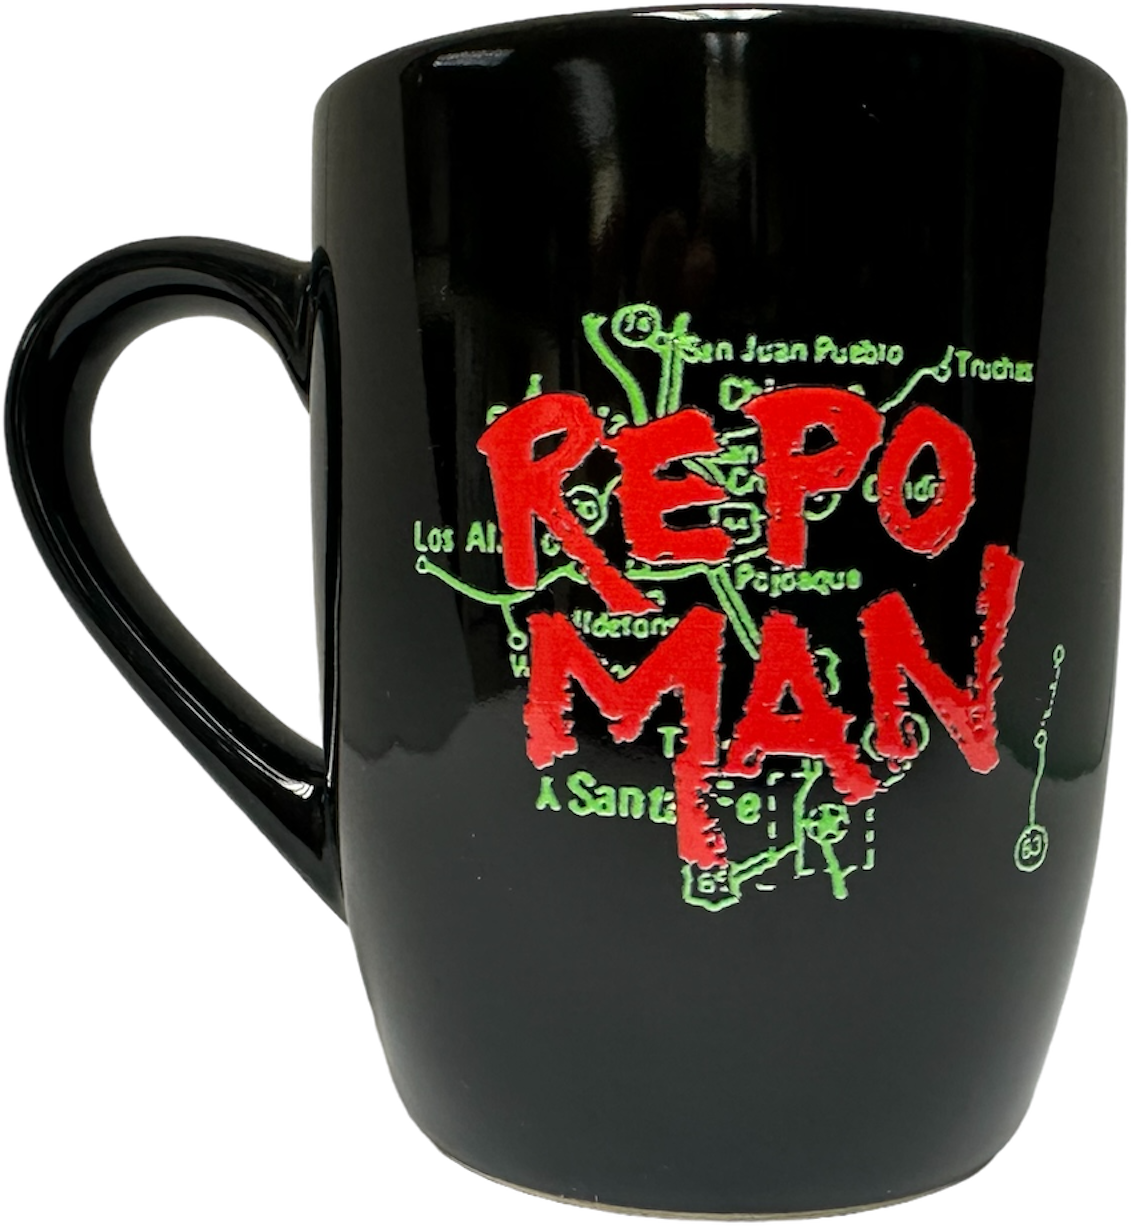 REPO MAN : "LOGO & MAP" COFFEE MUG